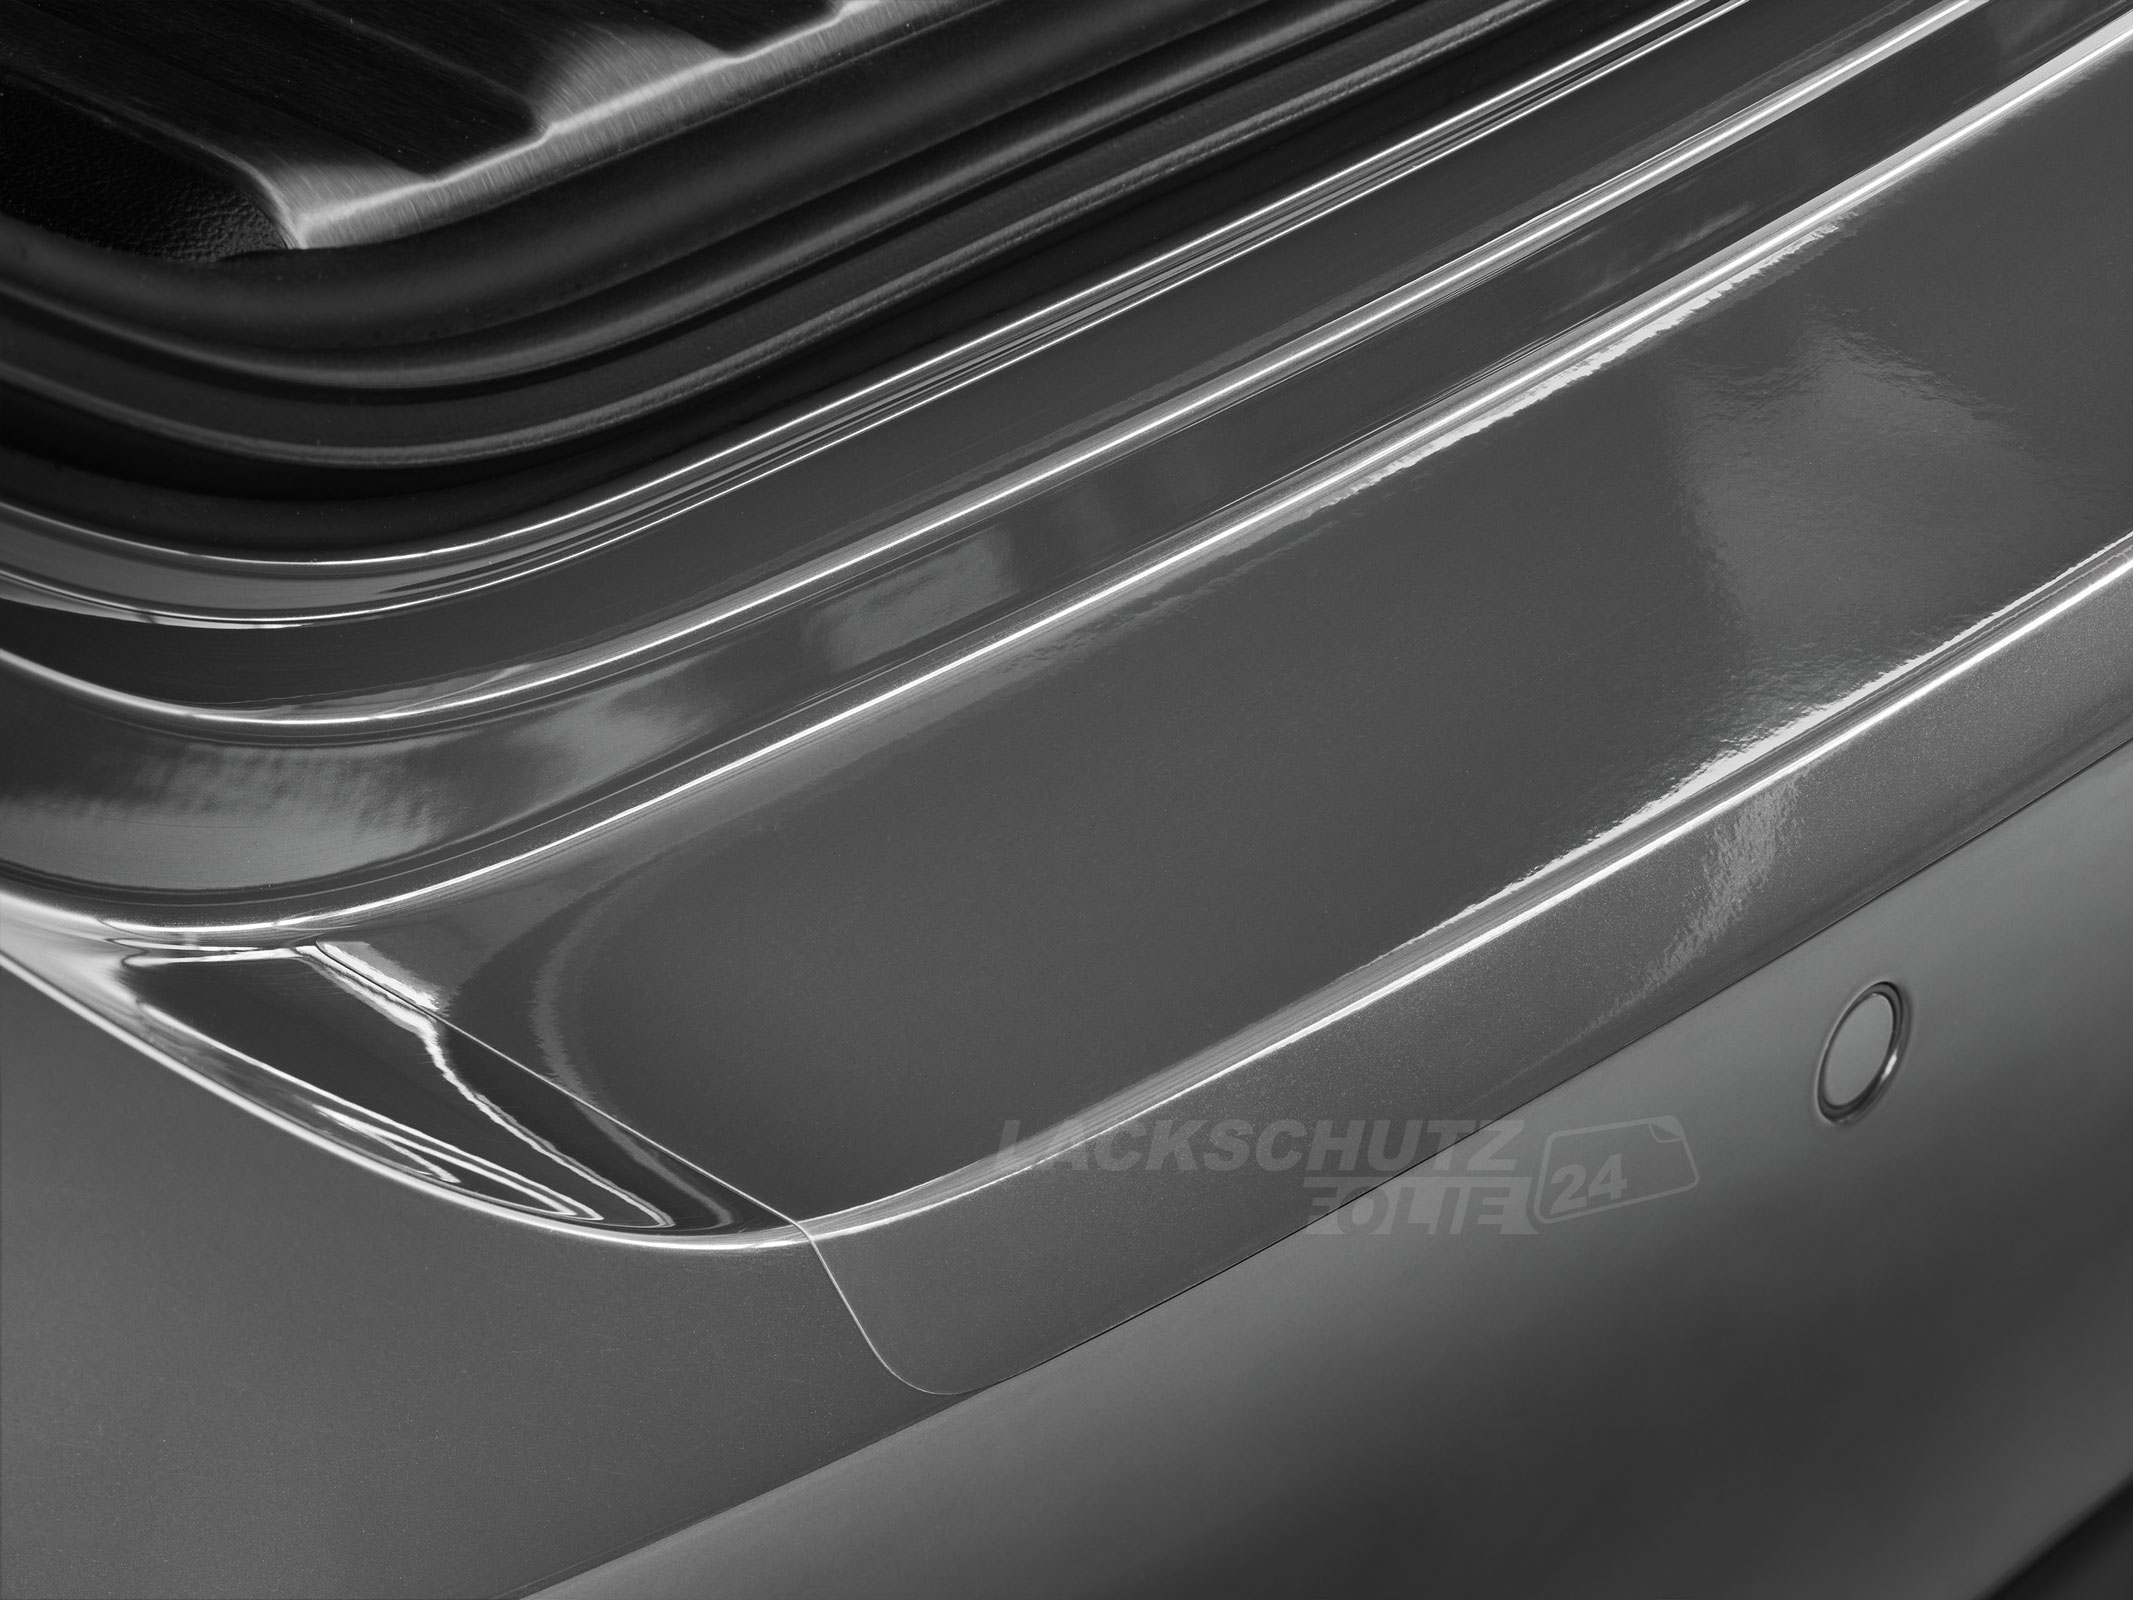 Ladekantenschutzfolie - Transparent Glatt Hochglänzend 240 µm stark für Audi A3 Typ 8P/8PA, Facelift, BJ 2008-2012